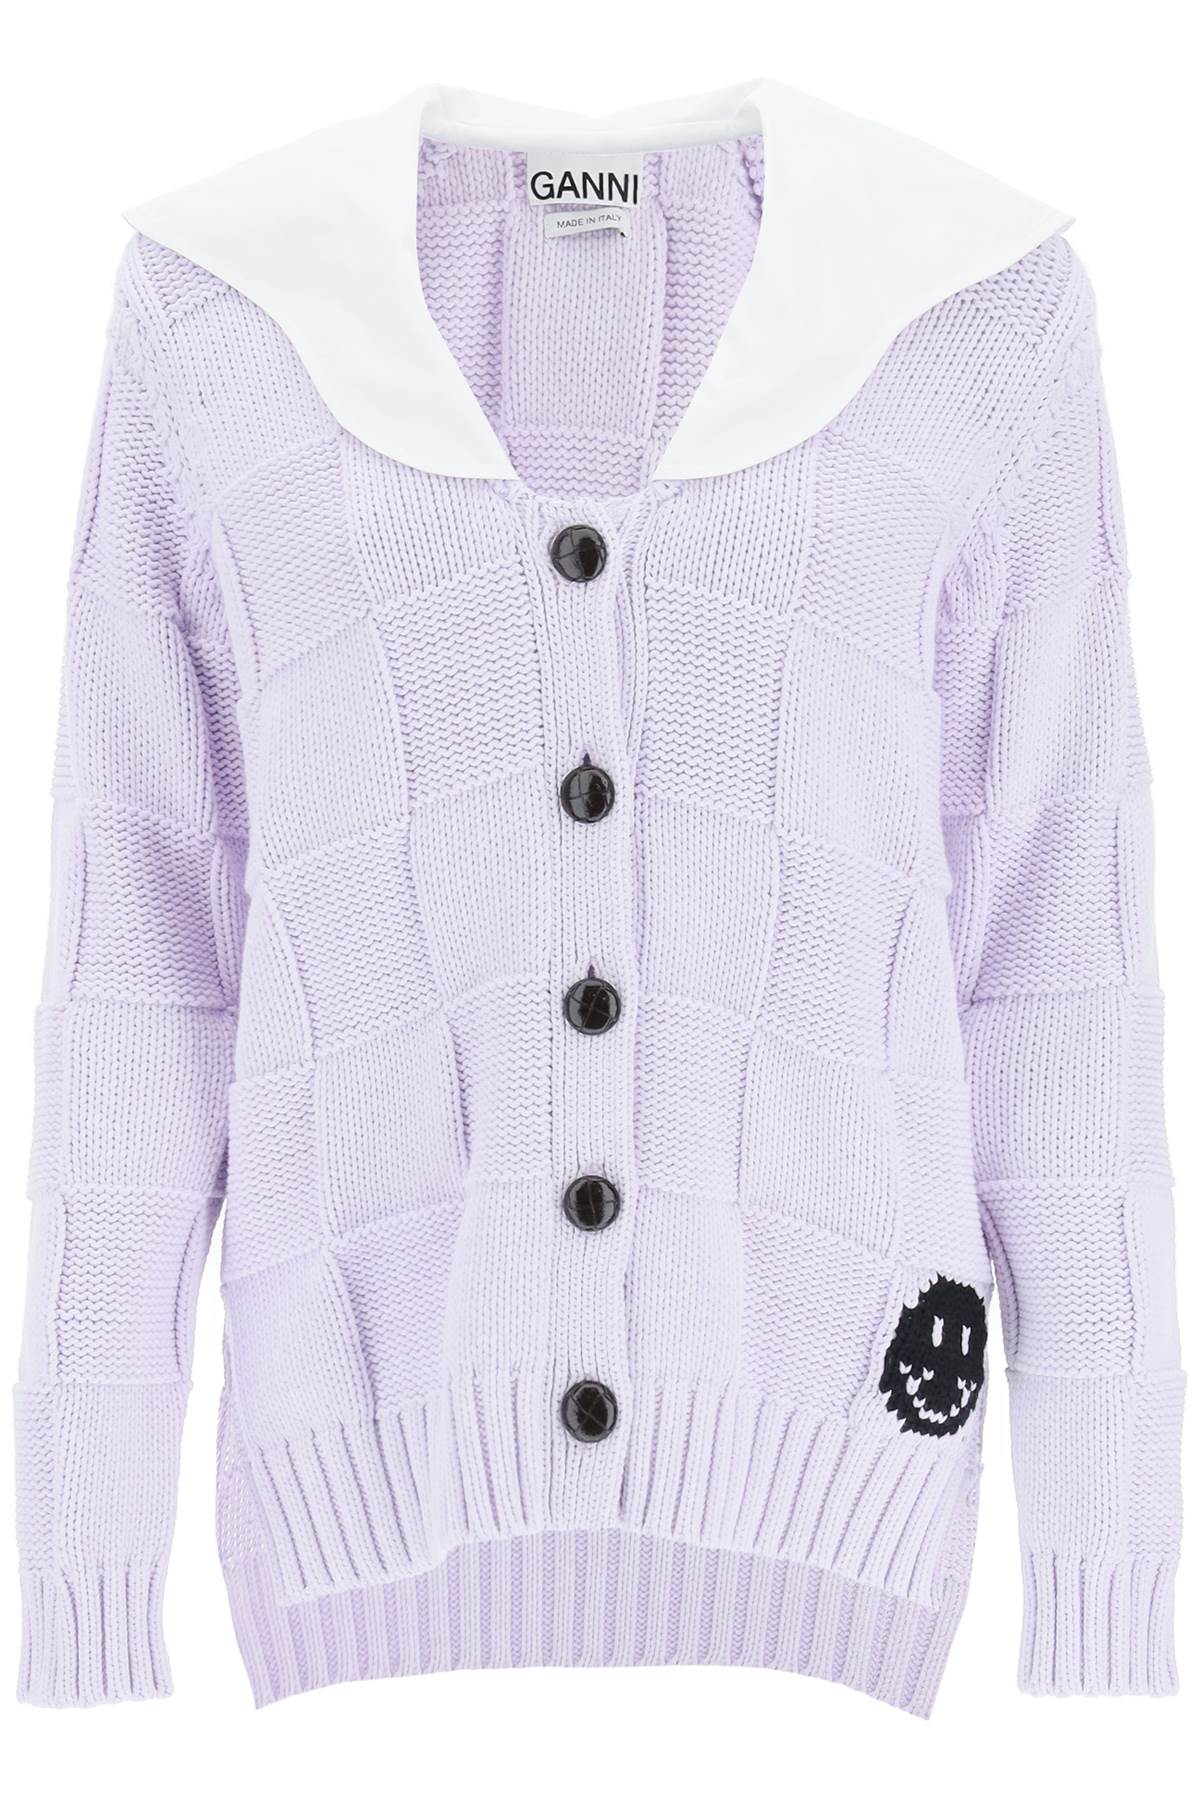 推荐GANNI 紫色女士针织衫/毛衣 K1599-712商品